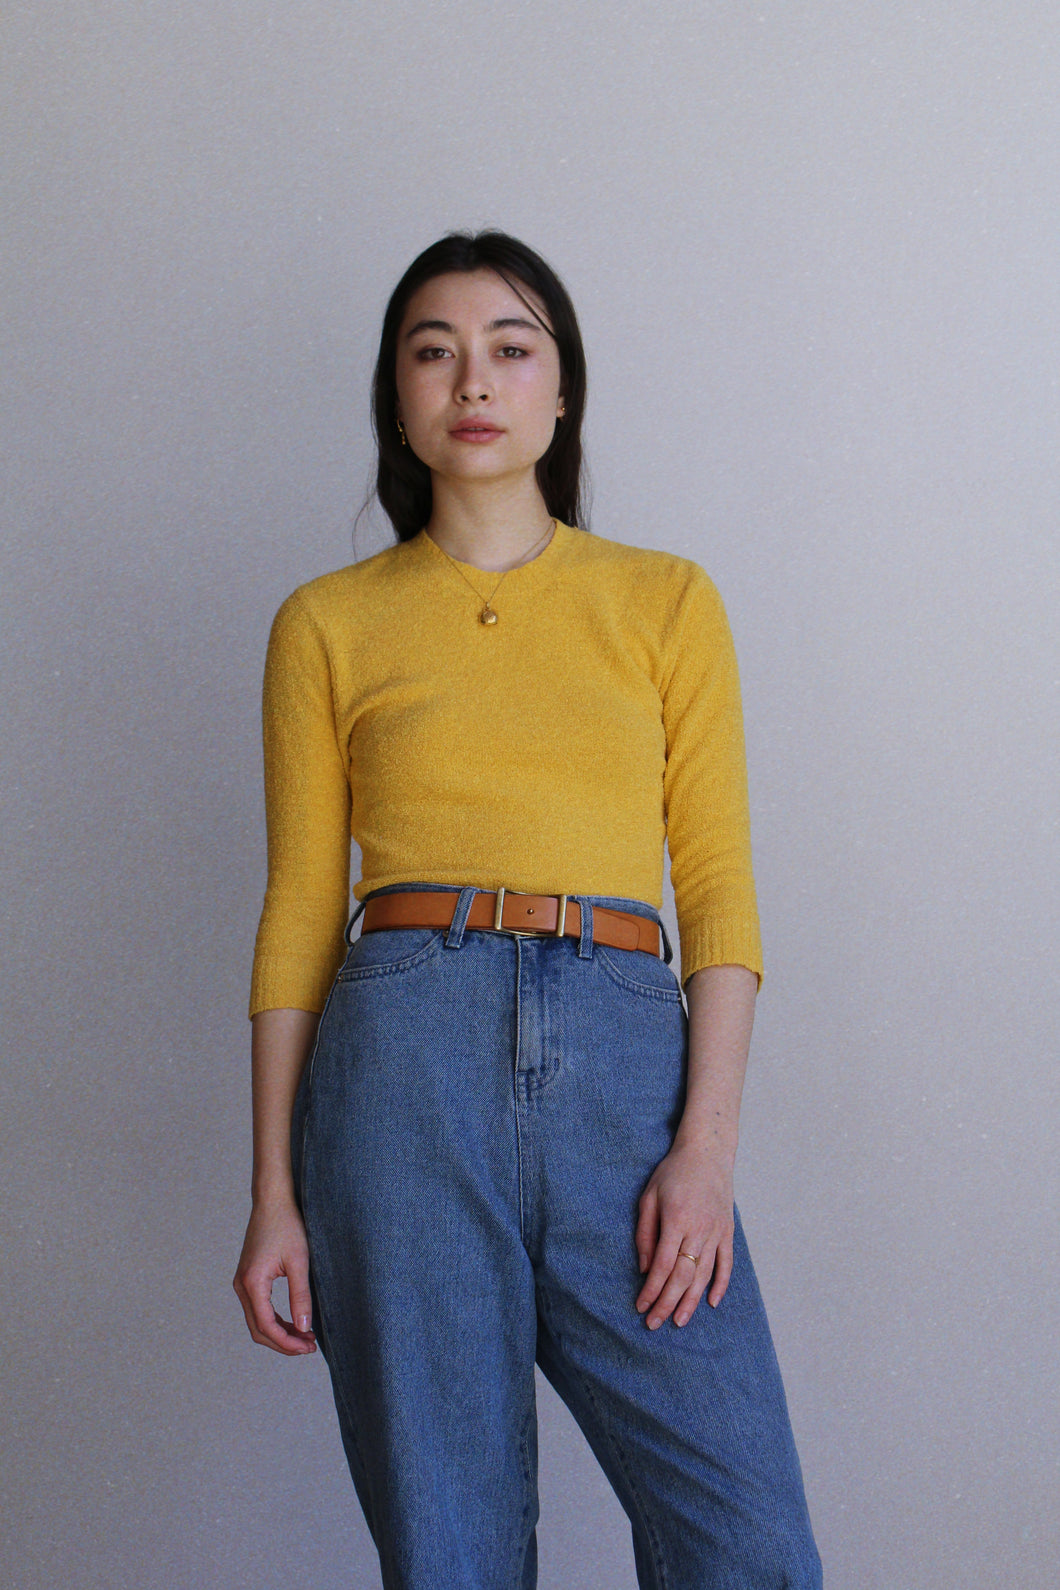 1980s Knit Sunshine Yellow Sweater